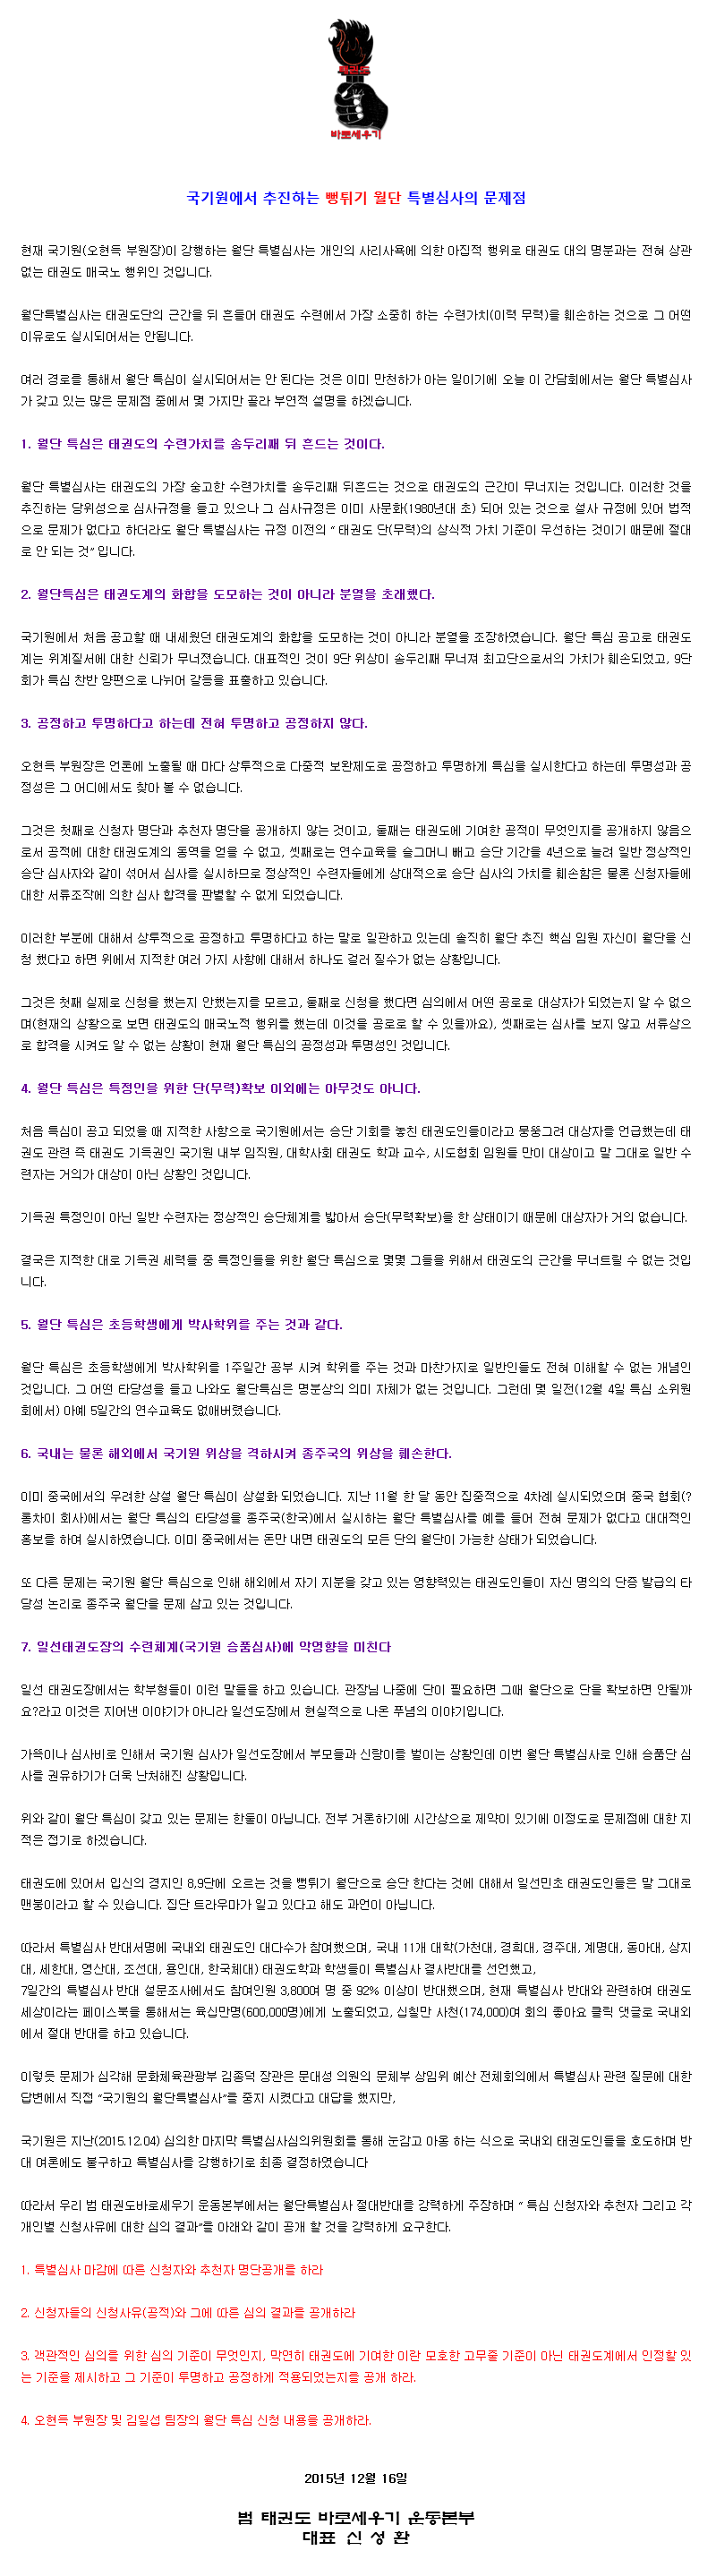 20151216_국회간담회_월단특별심사의문제점.gif